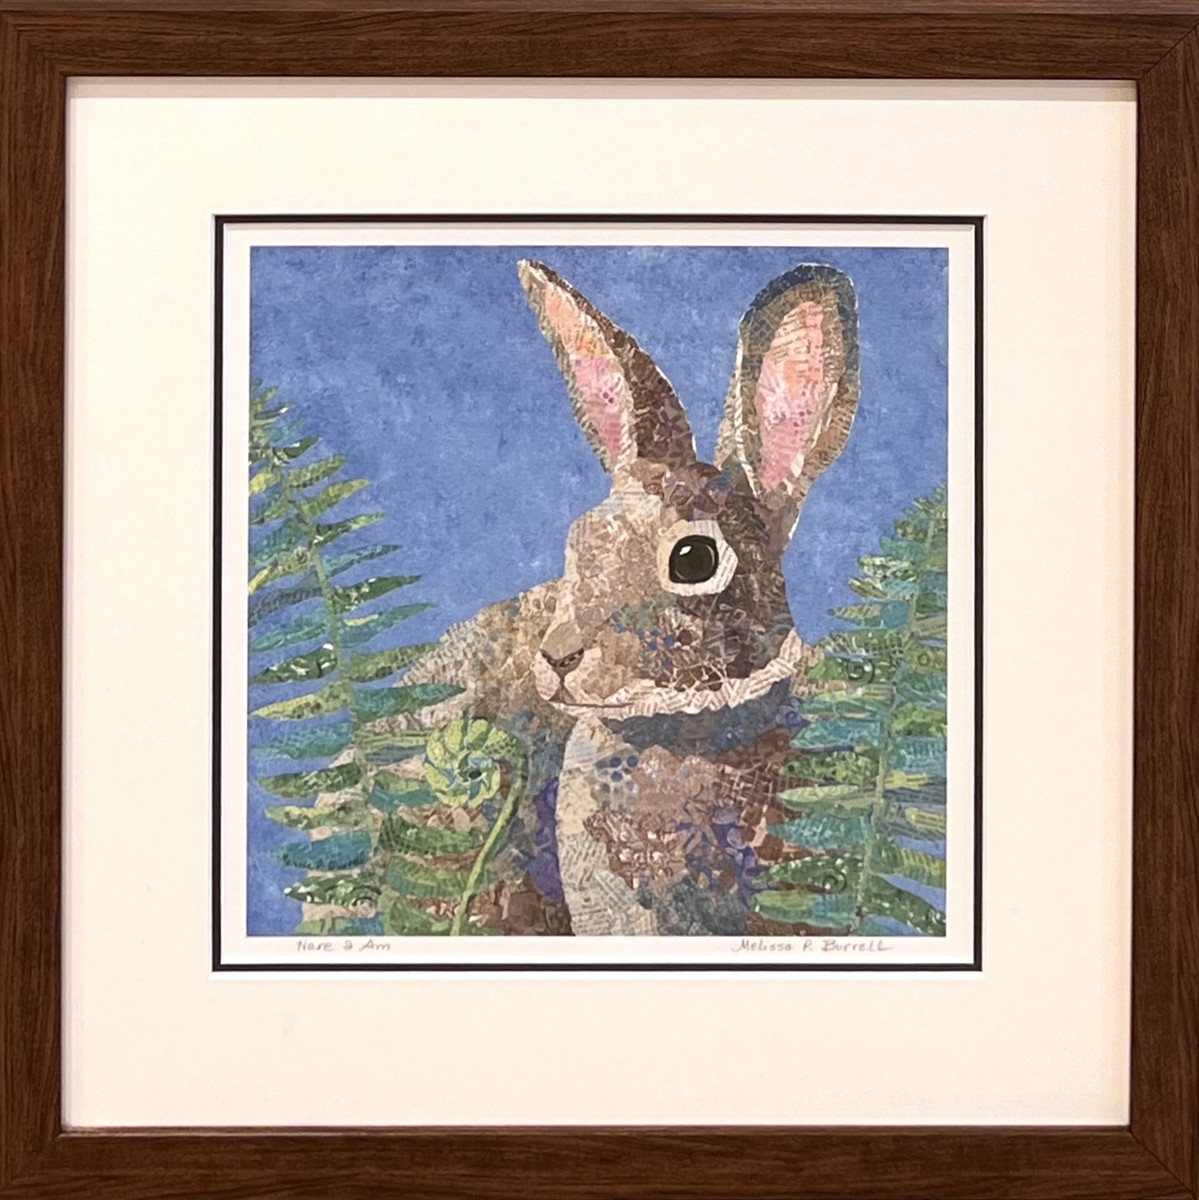 Framed Giclee - "Hare I am"